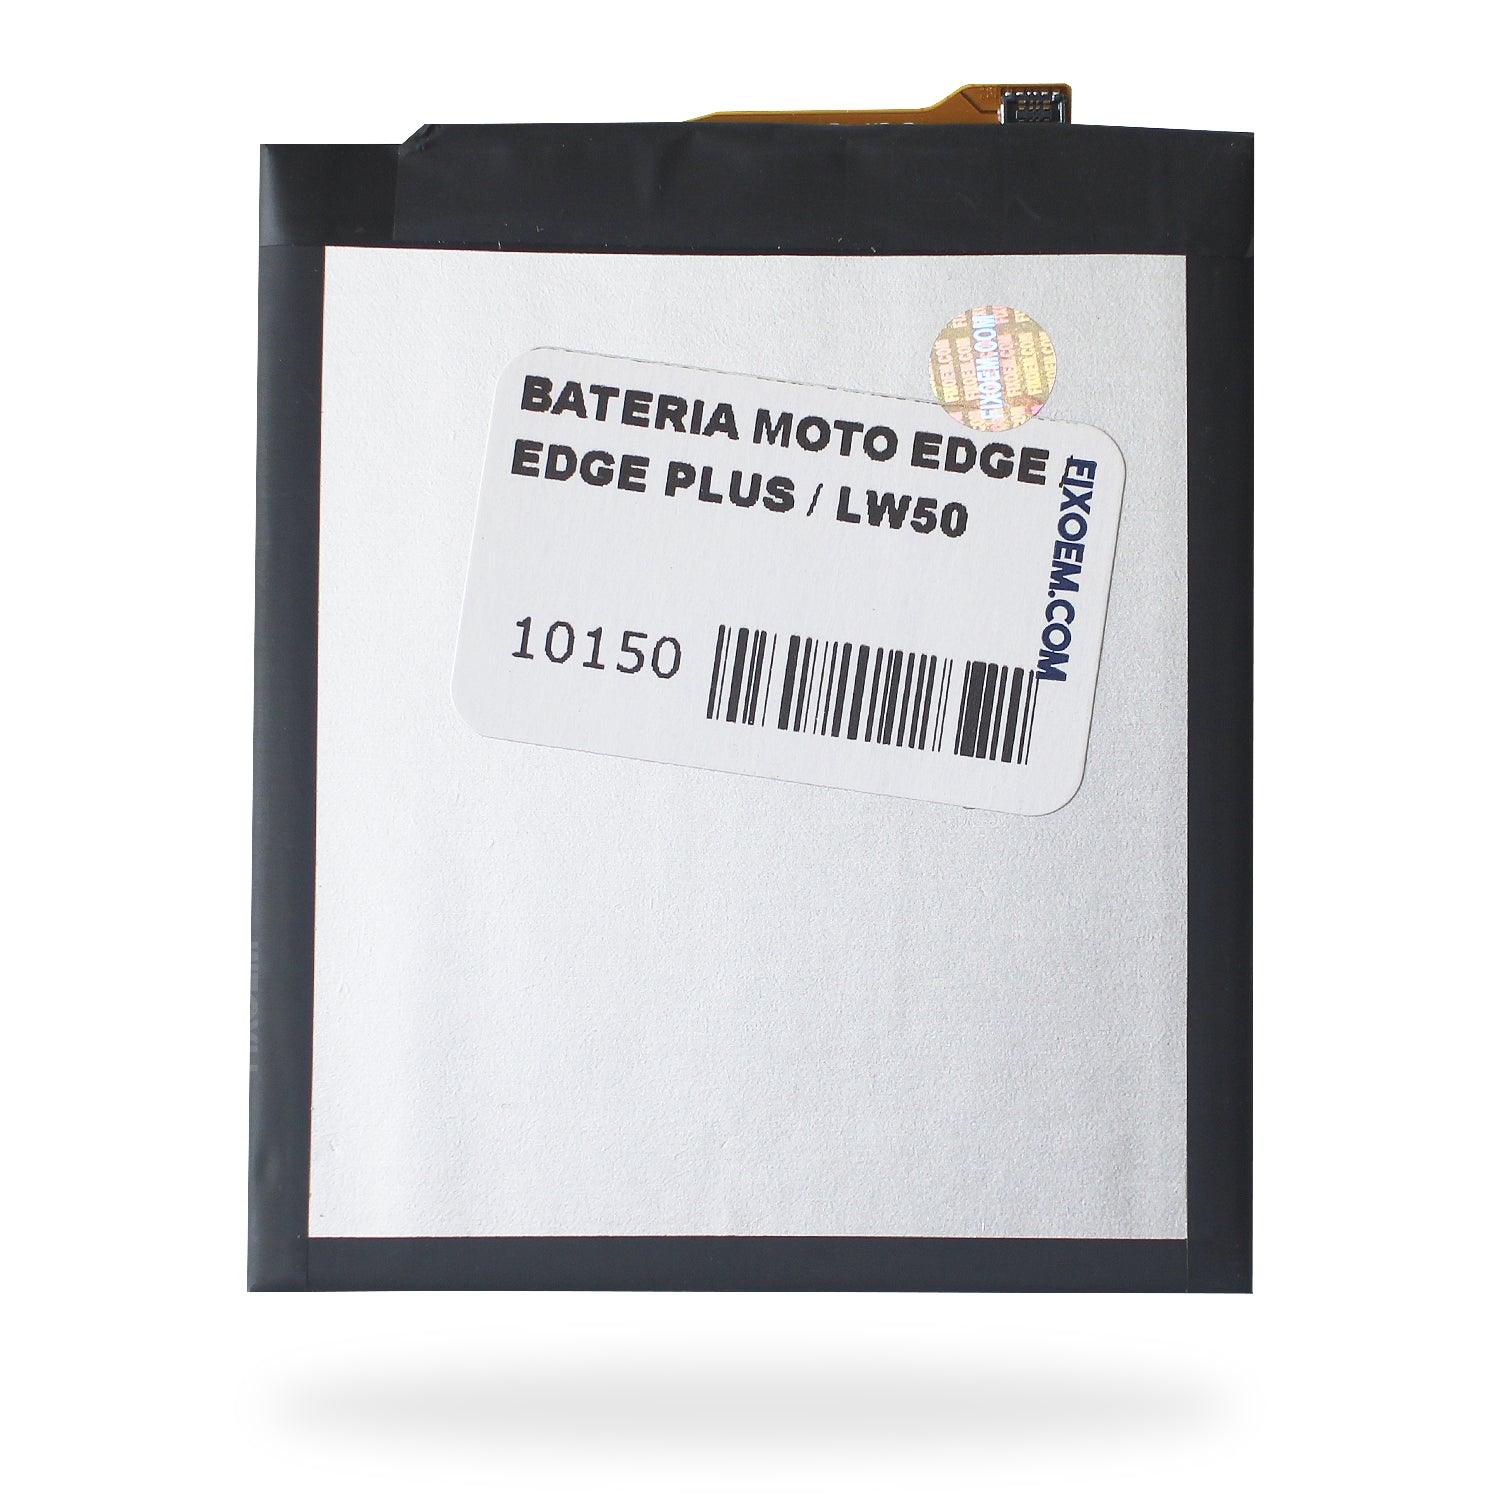 Bateria Moto Edge / Edge Plus Xt2063 XT2061-3 Lw50 a solo $ 200.00 Refaccion y puestos celulares, refurbish y microelectronica.- FixOEM